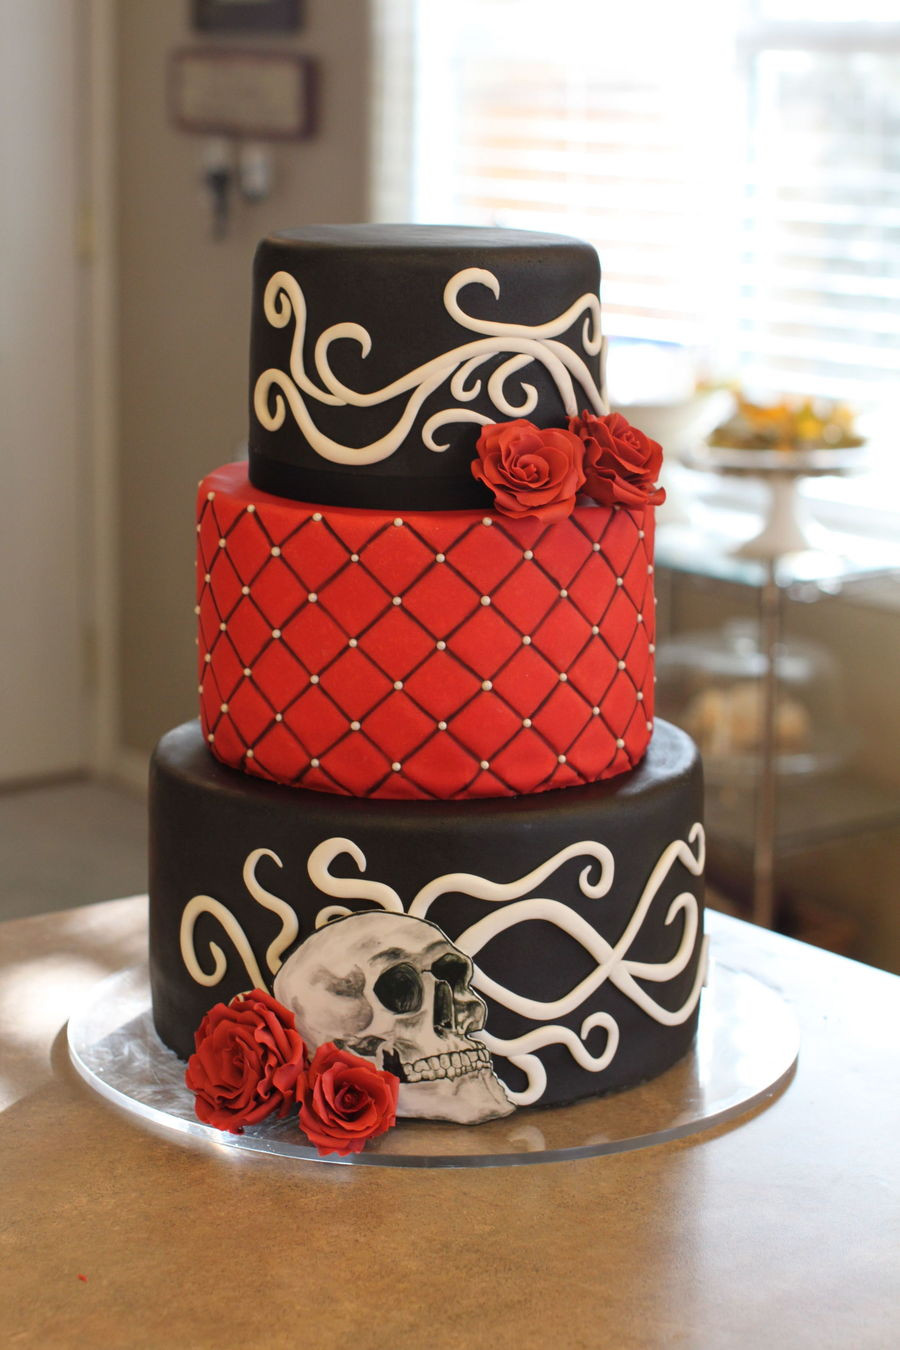 Rockabilly Wedding Cakes
 Gothic Rockabilly Wedding Cake With Sugar Roses Filigree